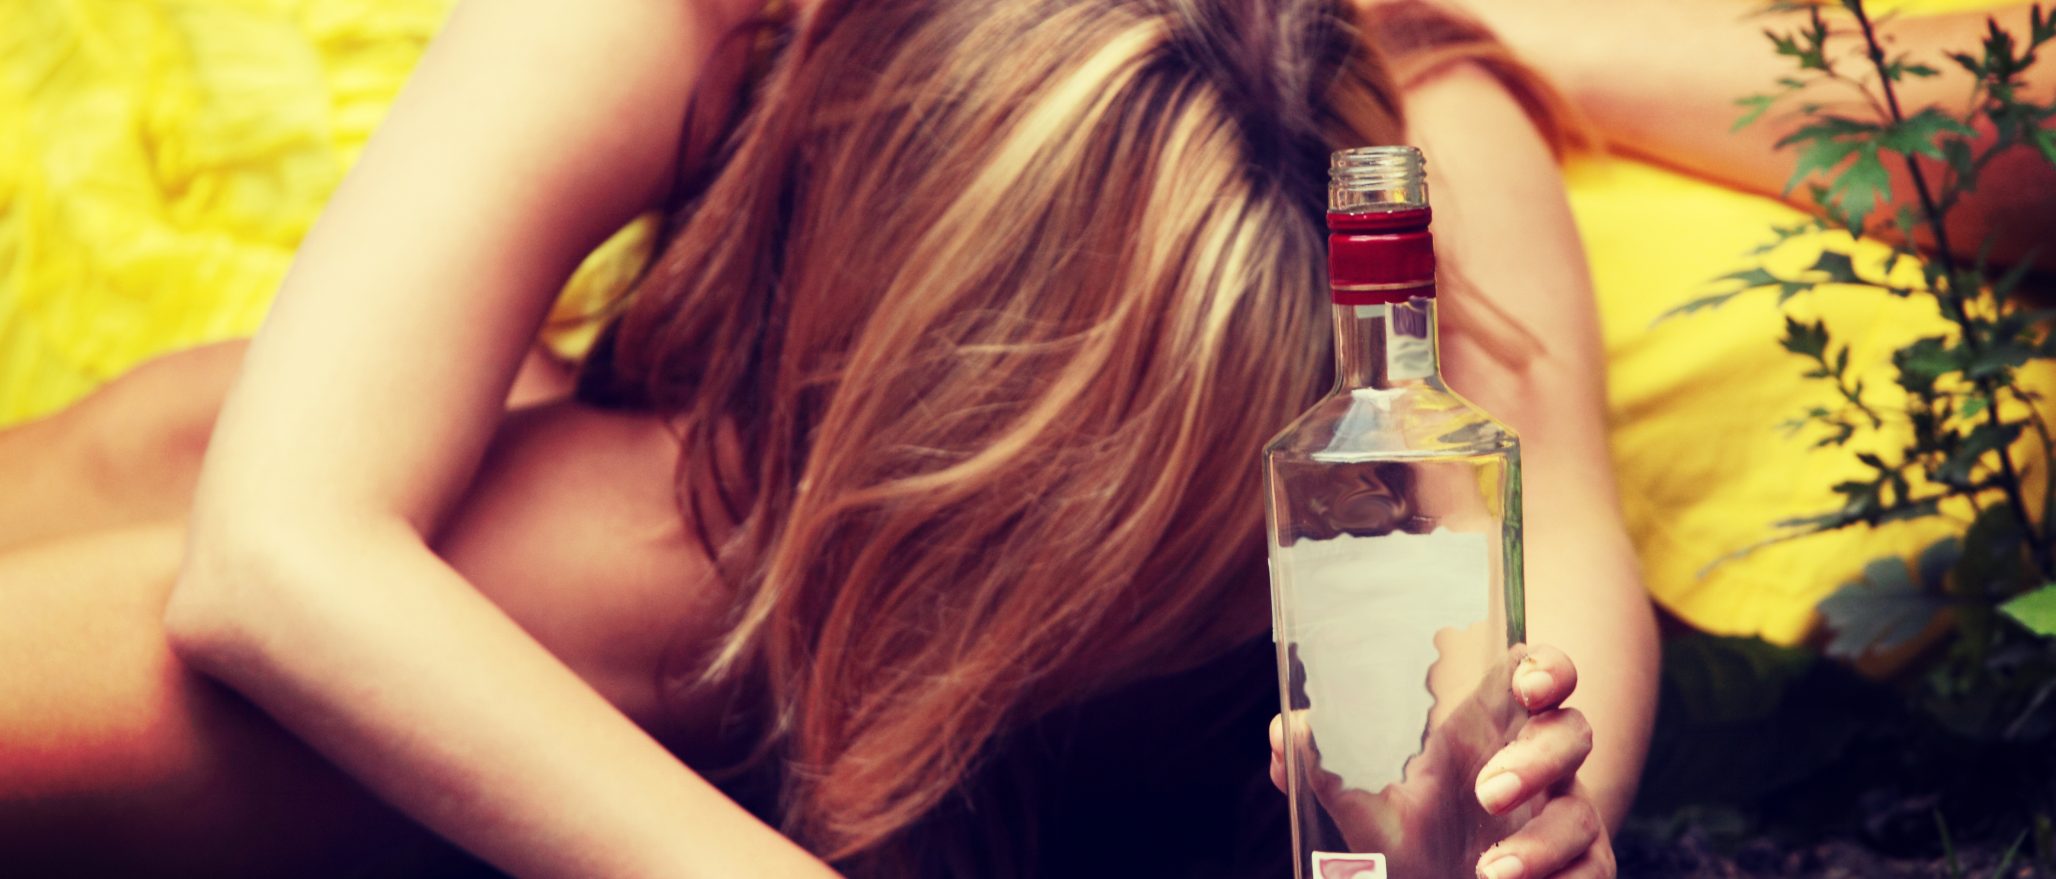 binge drinking is a women's health problem